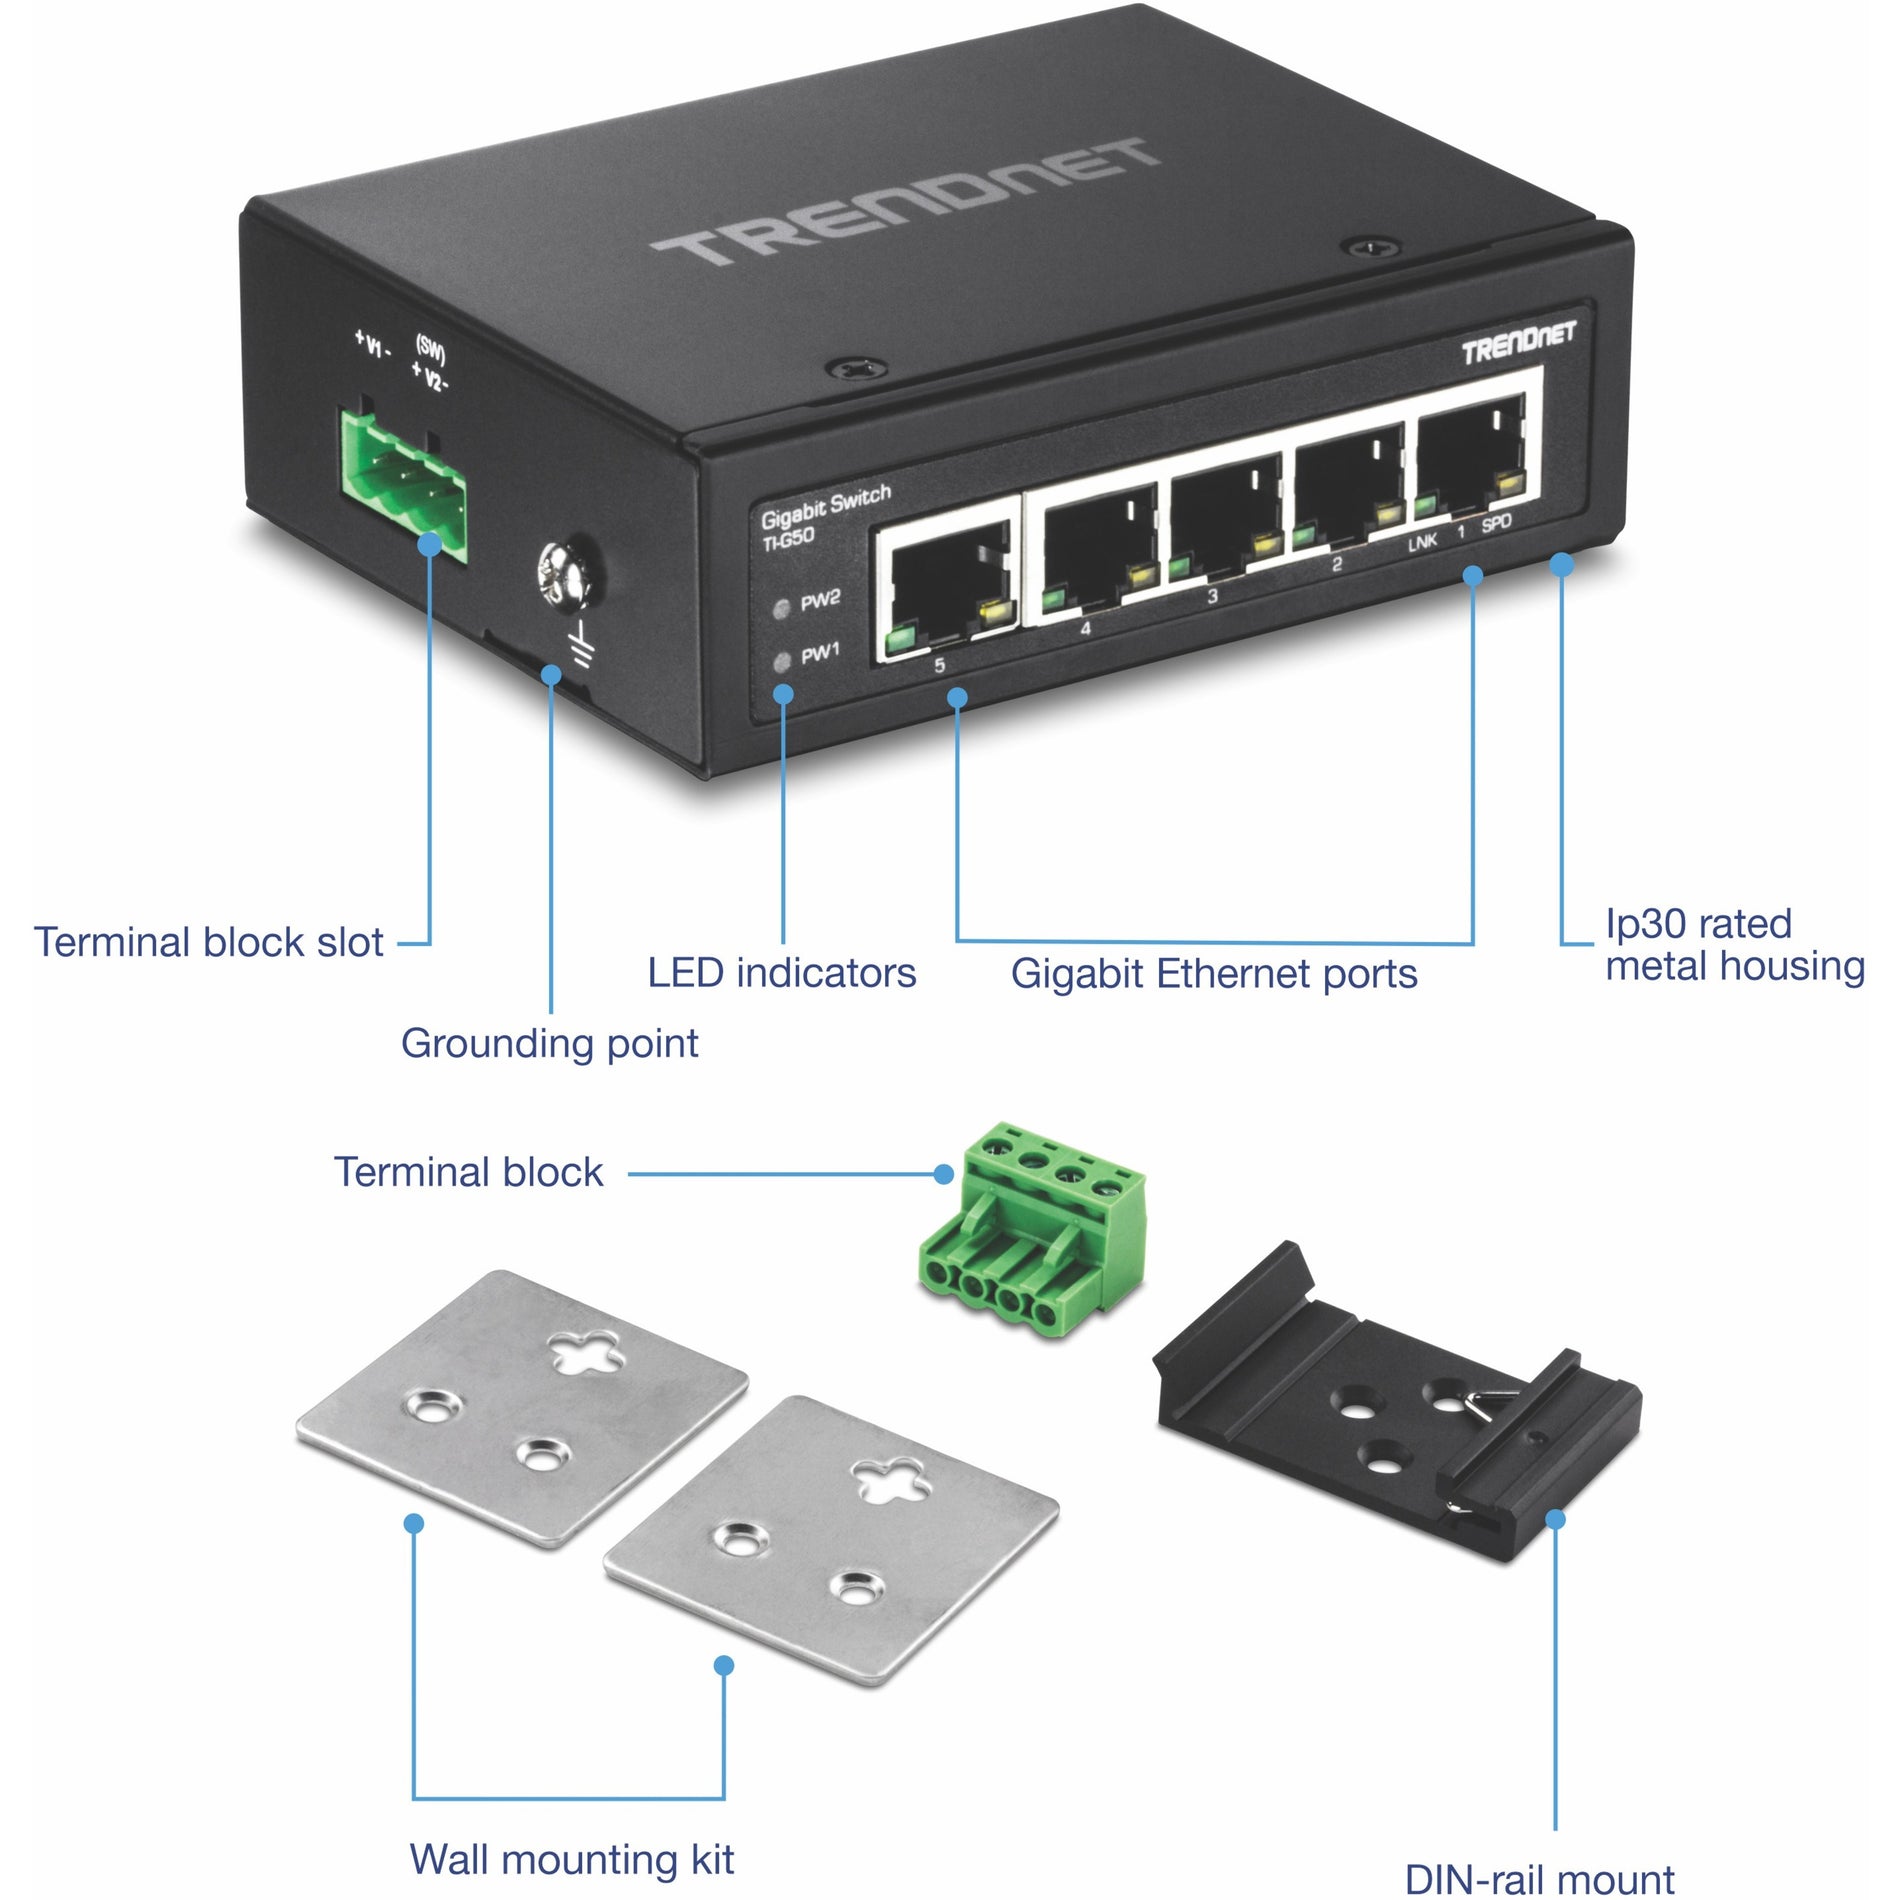 TRENDnet TI-G50 5-port indurito Switch industriale Gigabit capacità di commutazione 10 Gbps Switch di rete valutato IP30 (-40 a 167 ?F) staffe DIN-Rail e parete incluse Protezione a vita Nero